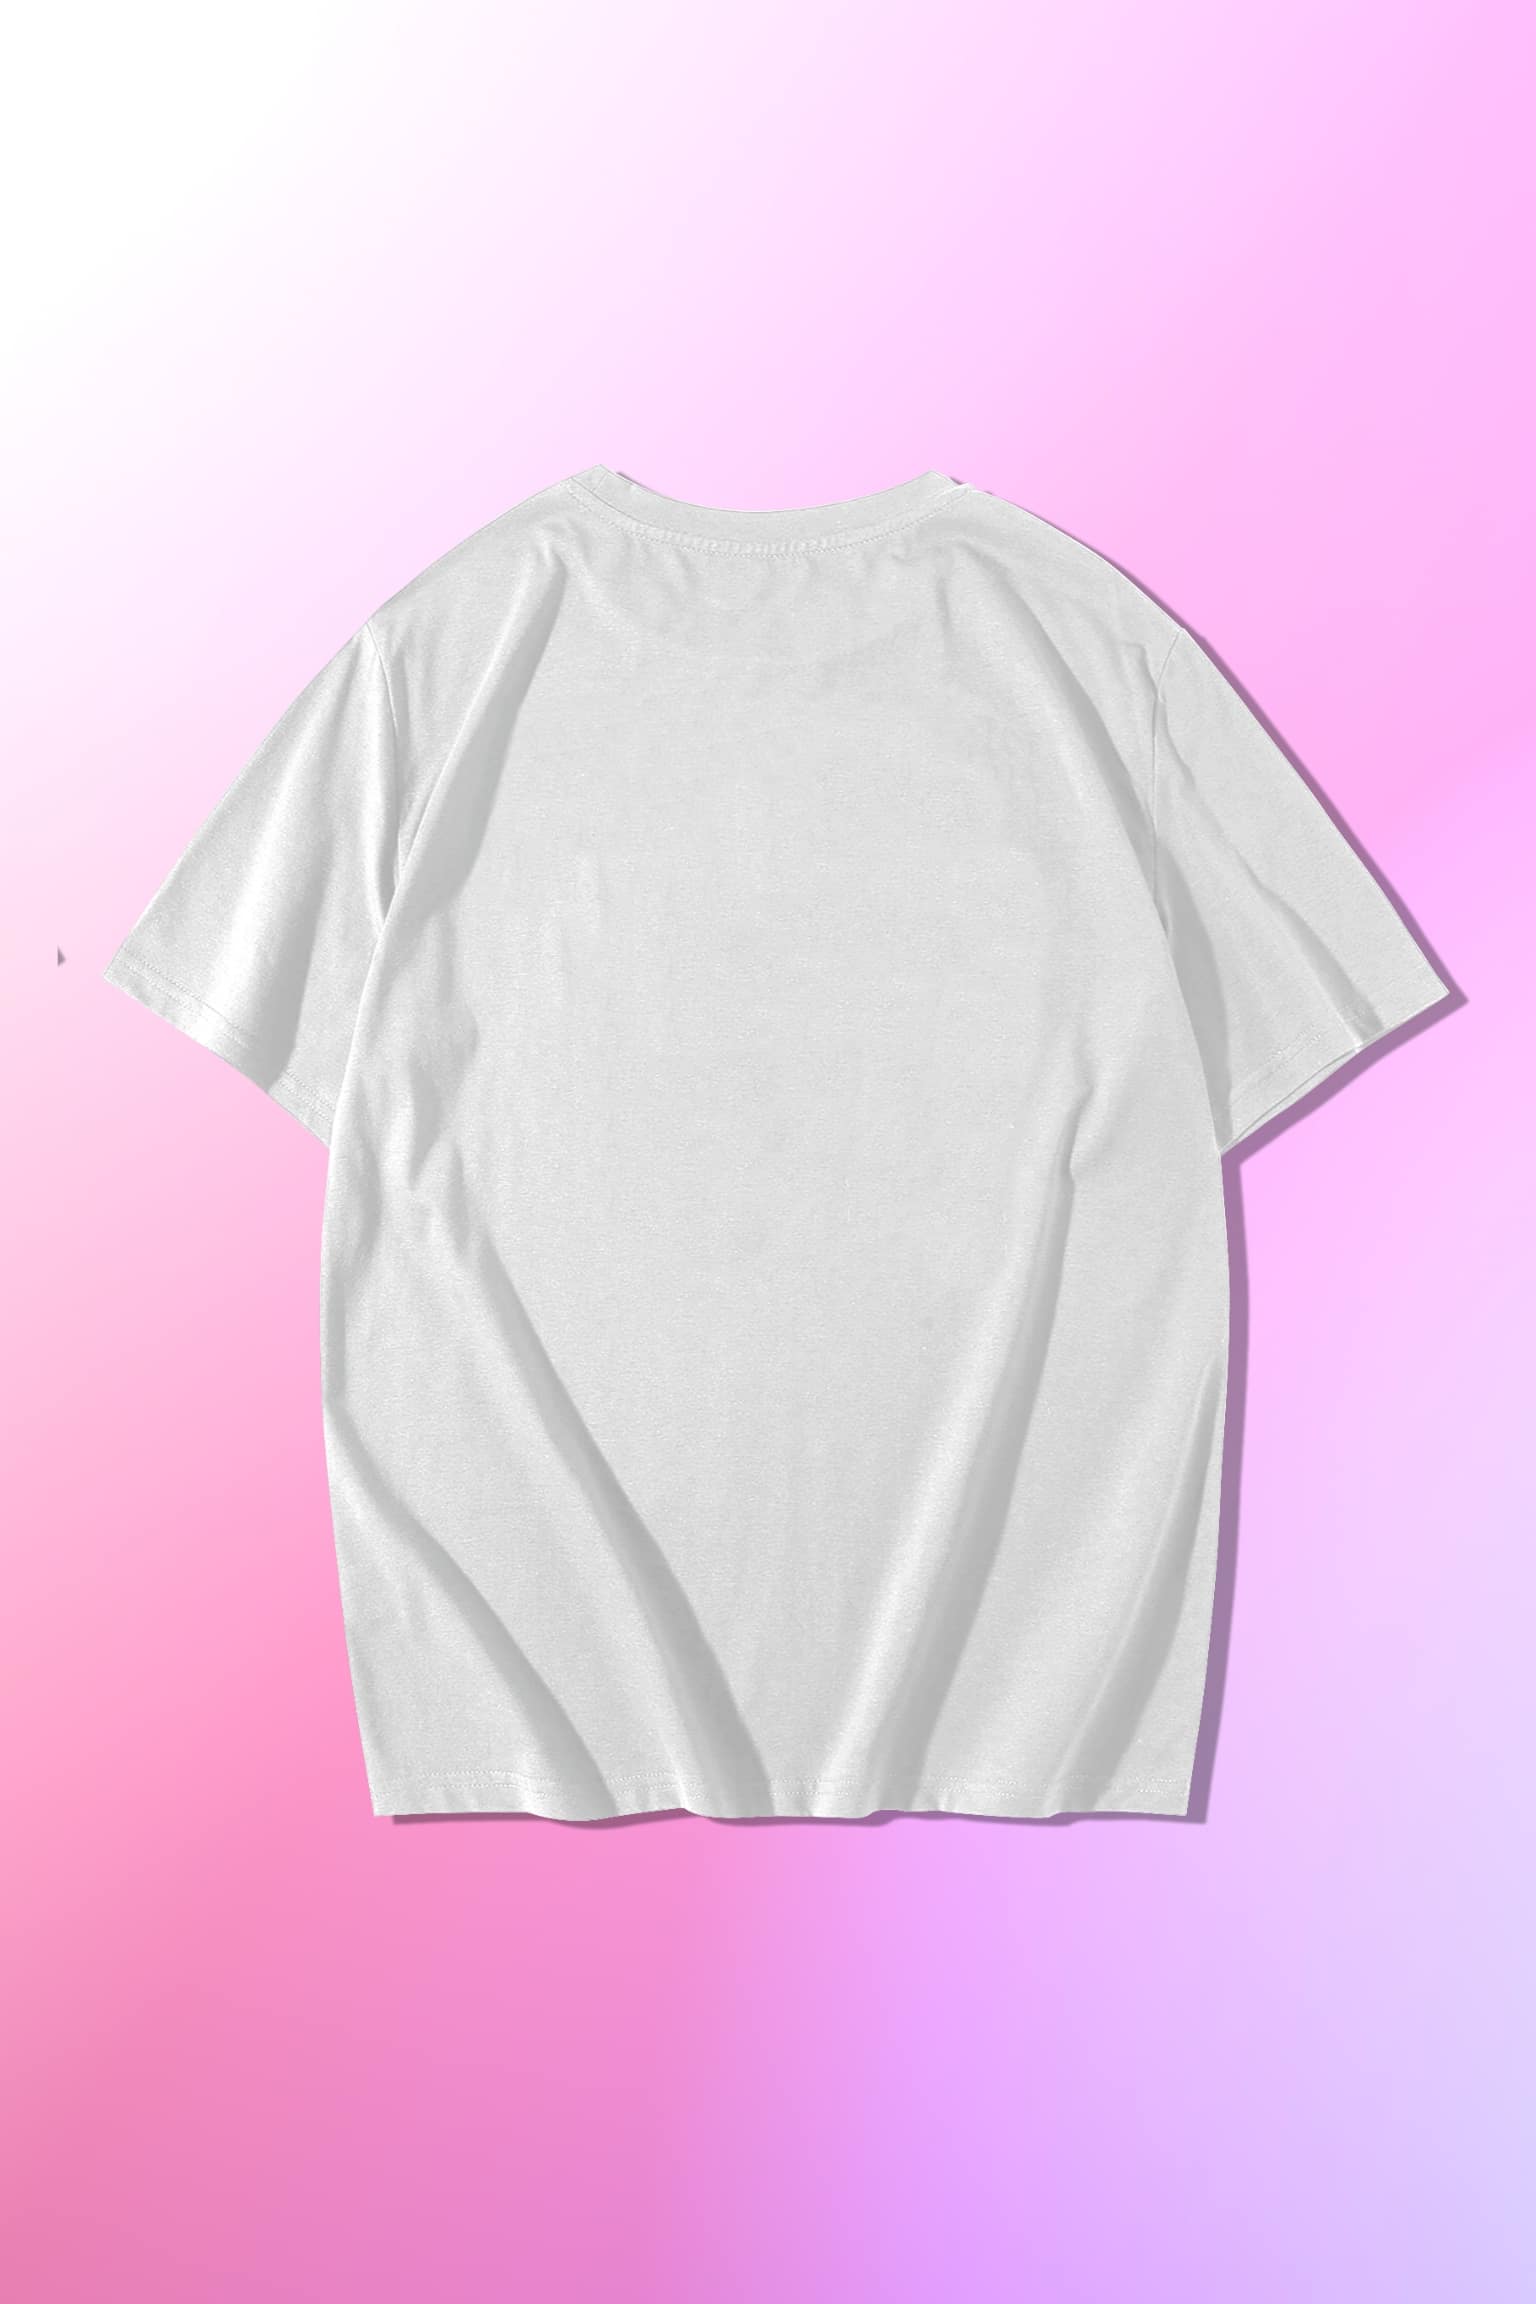 Minimal Oversized XXXTentacion T Shirt